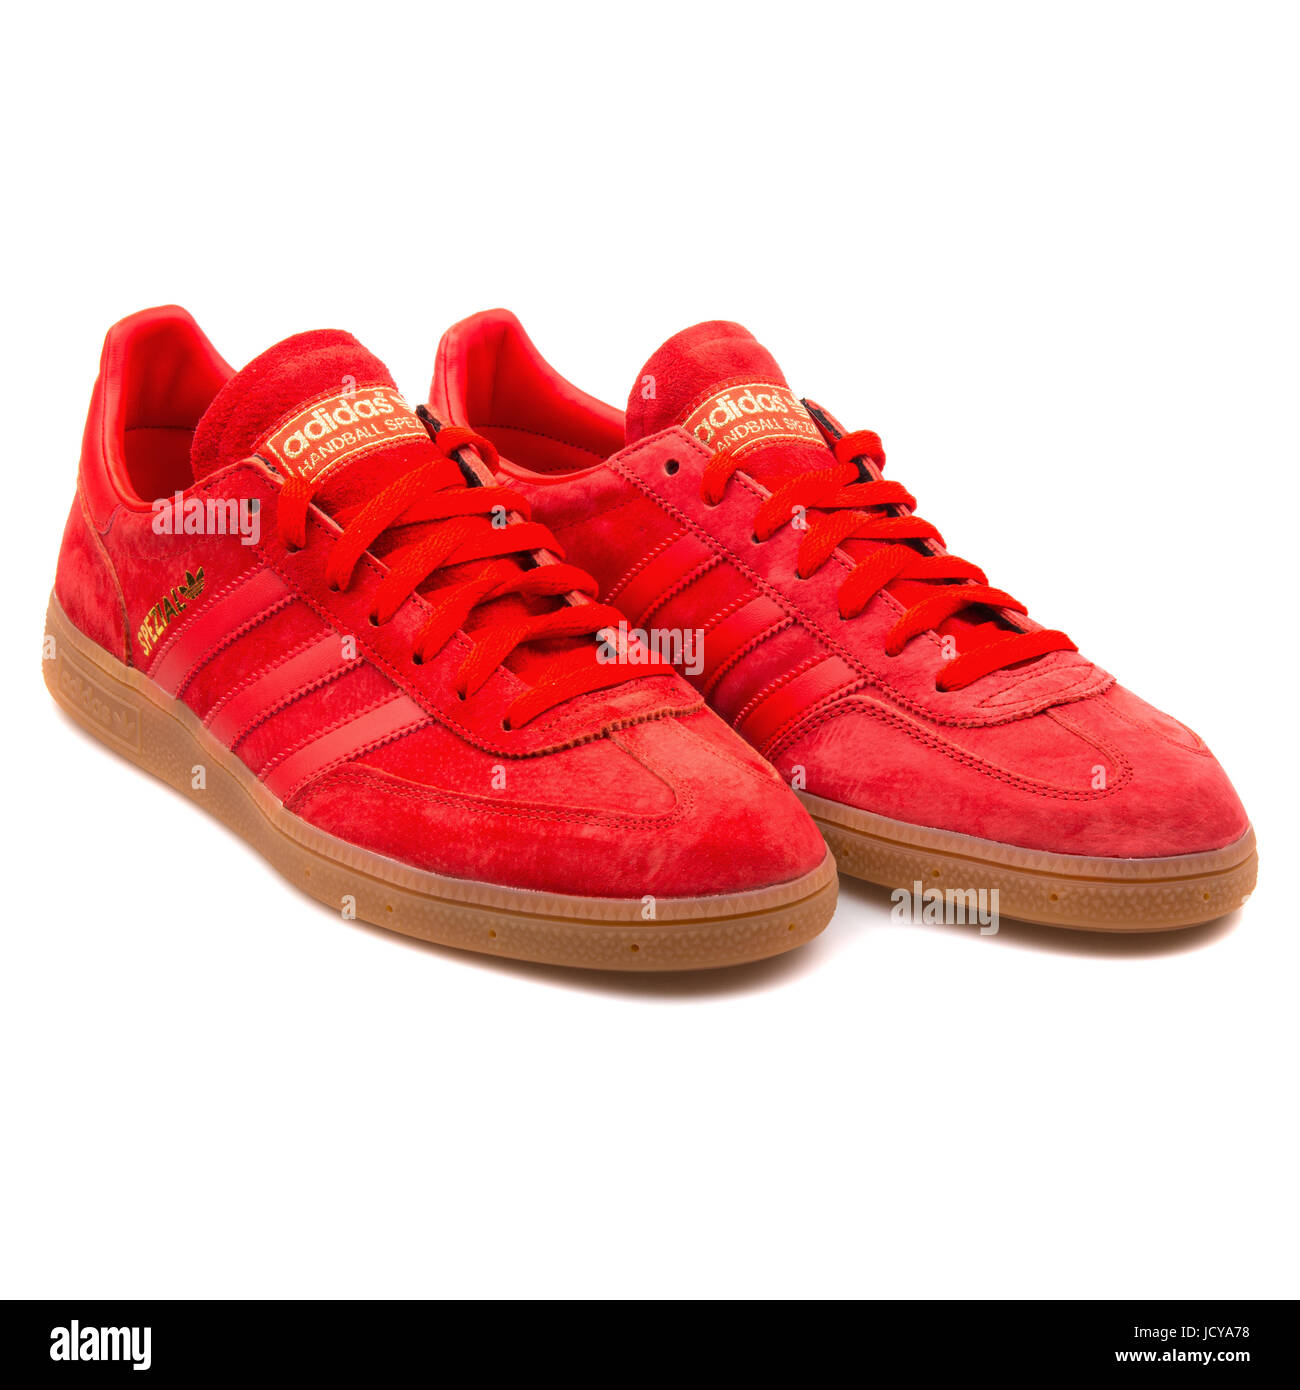 El principio Una oración léxico Adidas Spezial Red Men's Sports Shoes - B35209 Stock Photo - Alamy